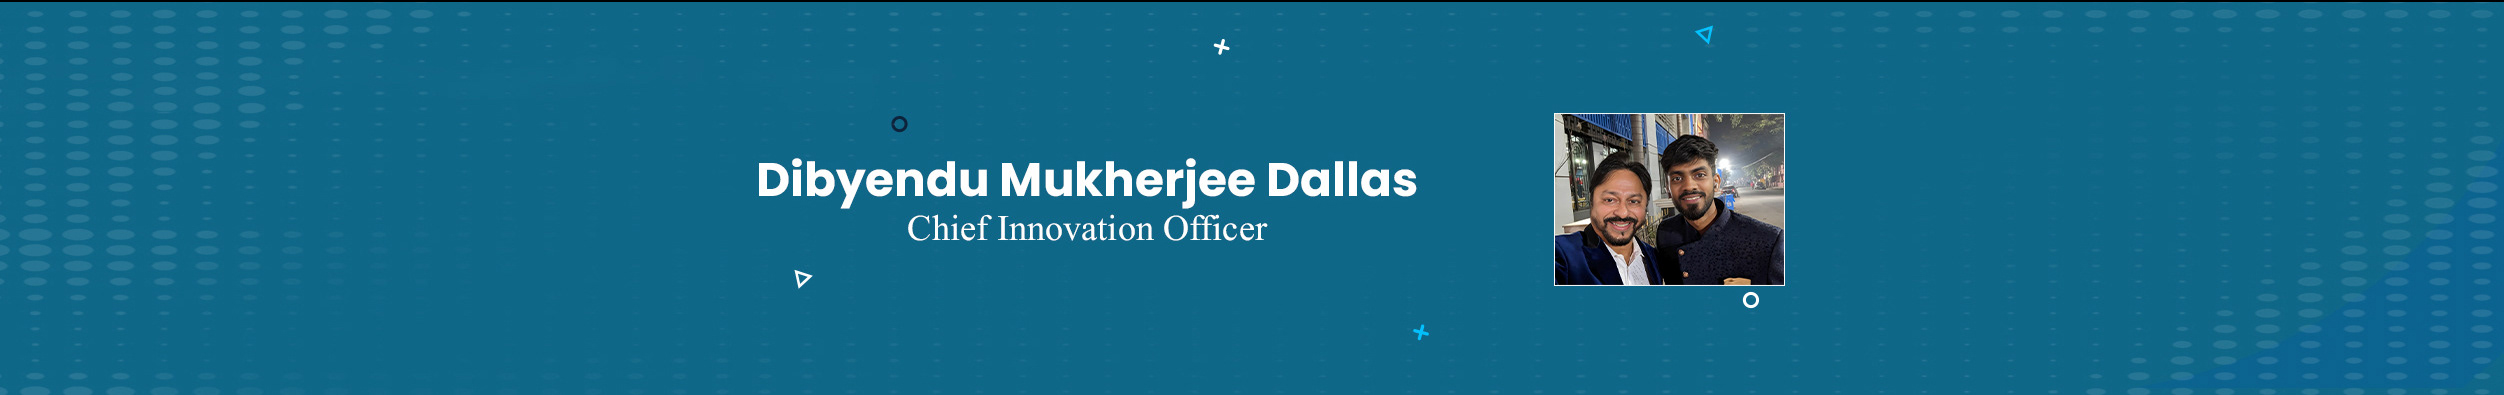 Dibyendu Mukherjee Dallas's profile banner